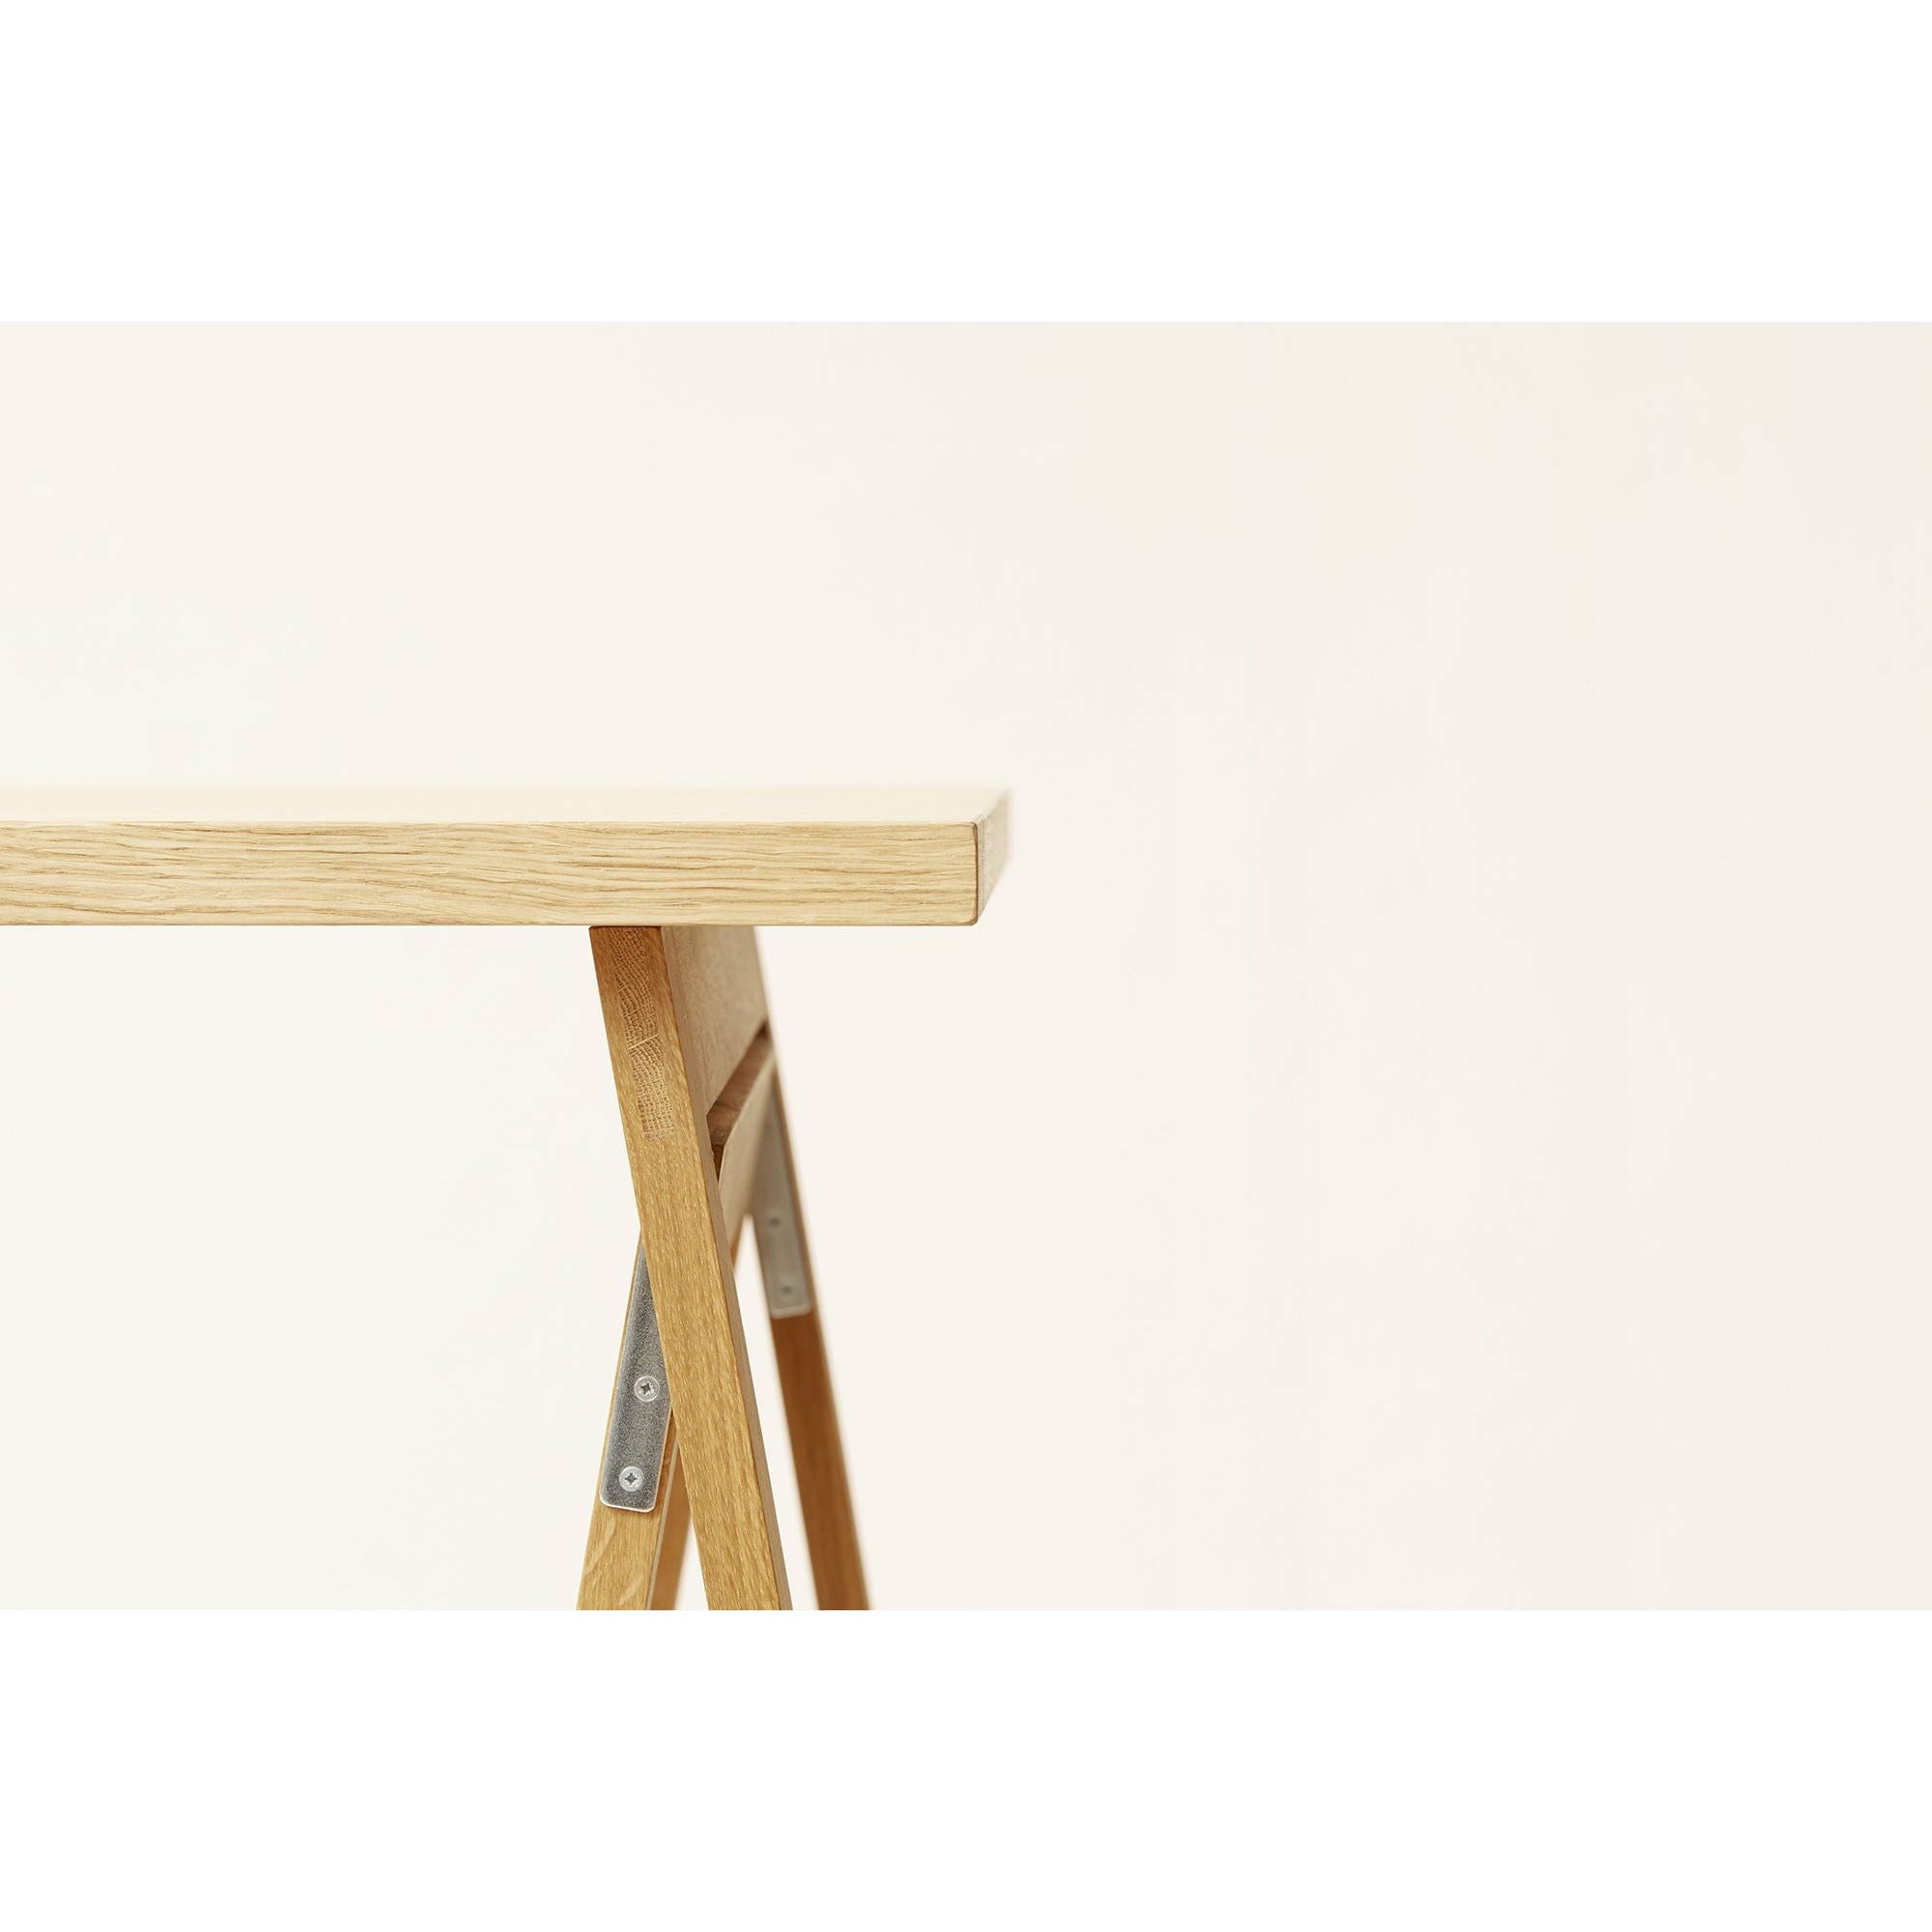 Form & Refine Linear Tabletop 125x68 Cm. Oak